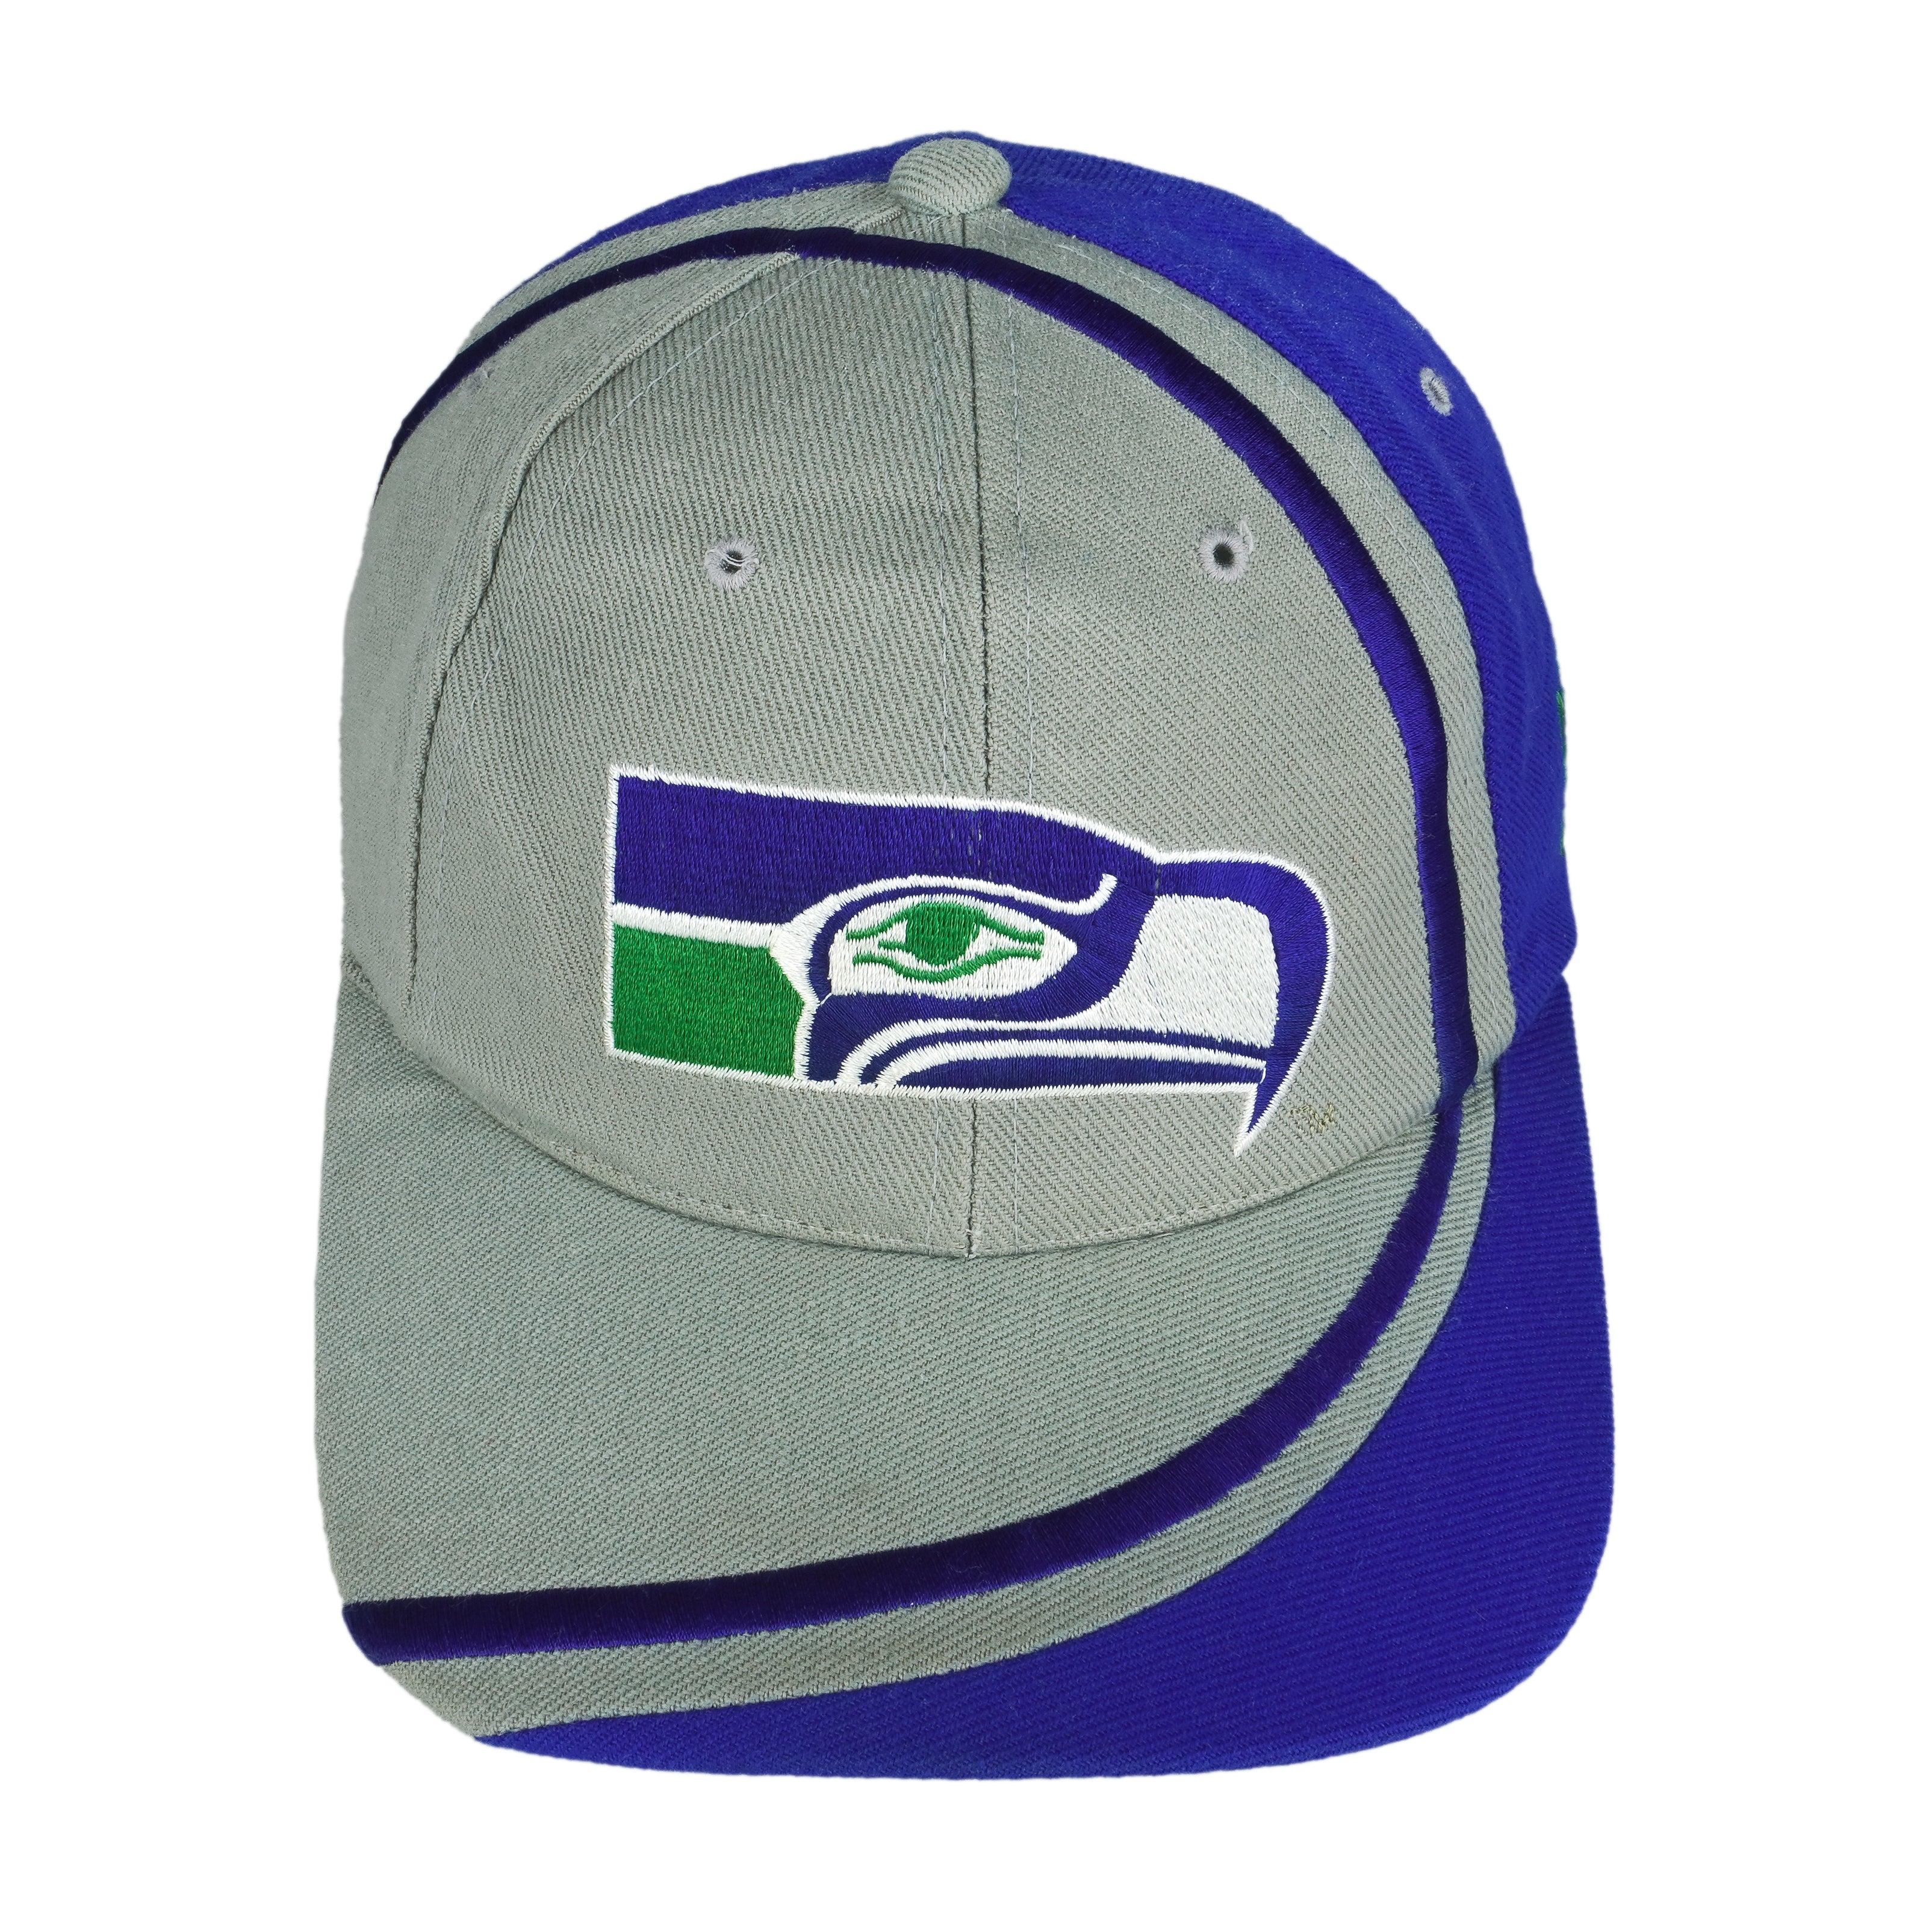 Seattle Seahawks cap